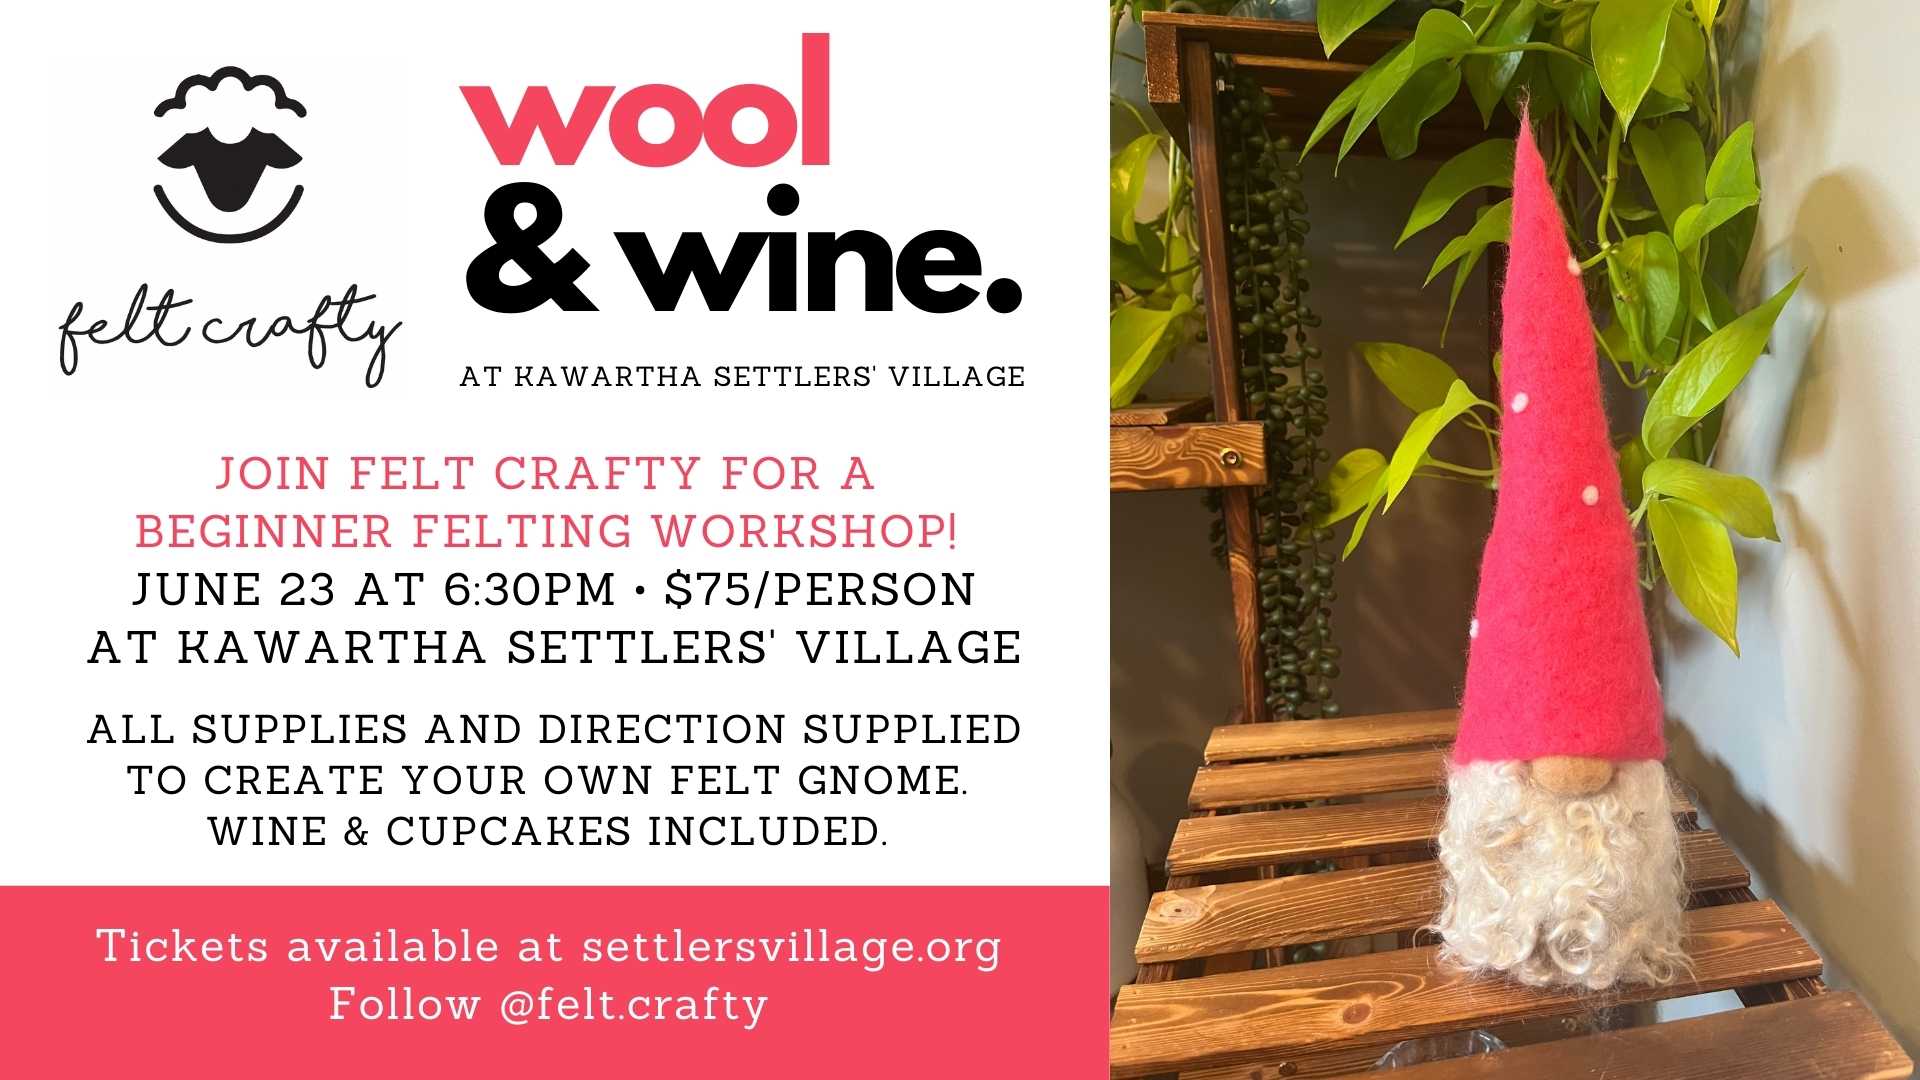 Felt Crafty - Wool & Wine Workshop